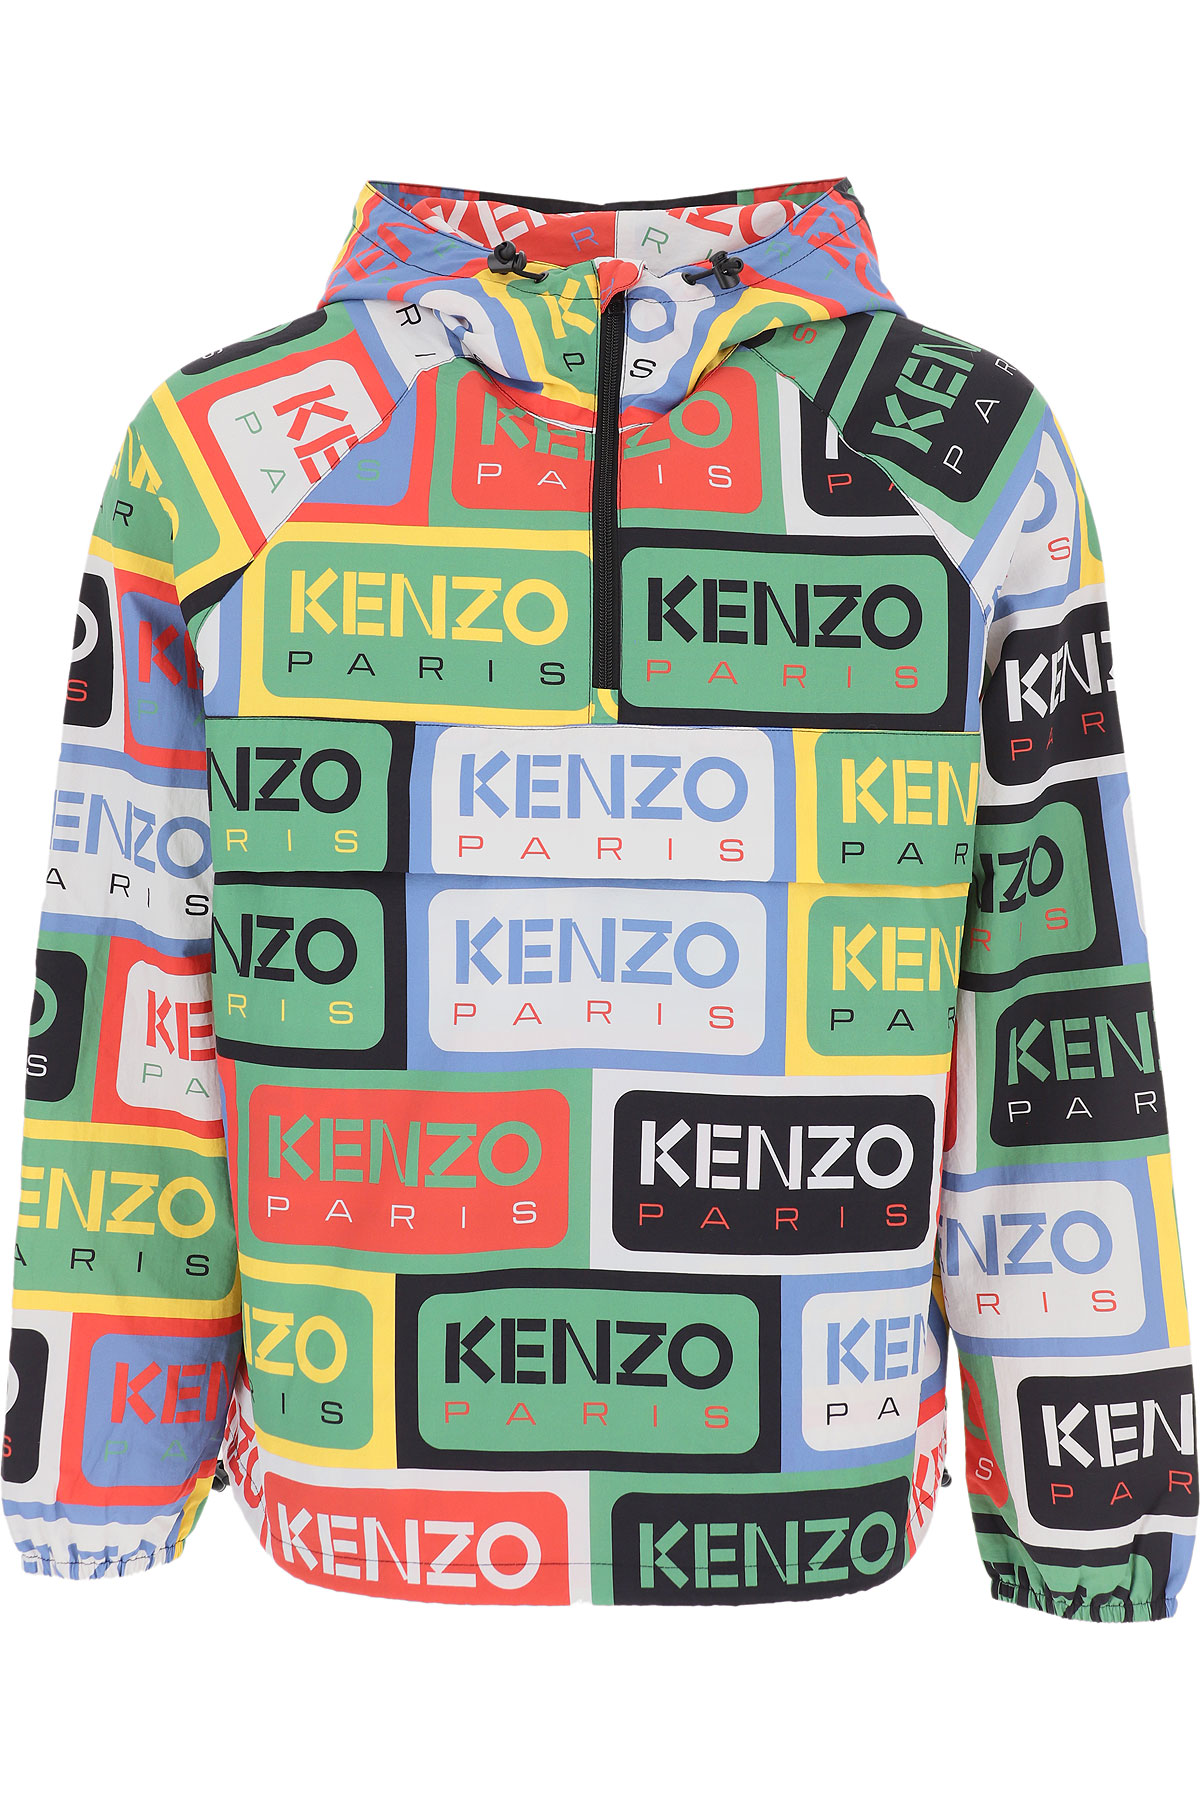 Kenzo Abbigliamento Uomo